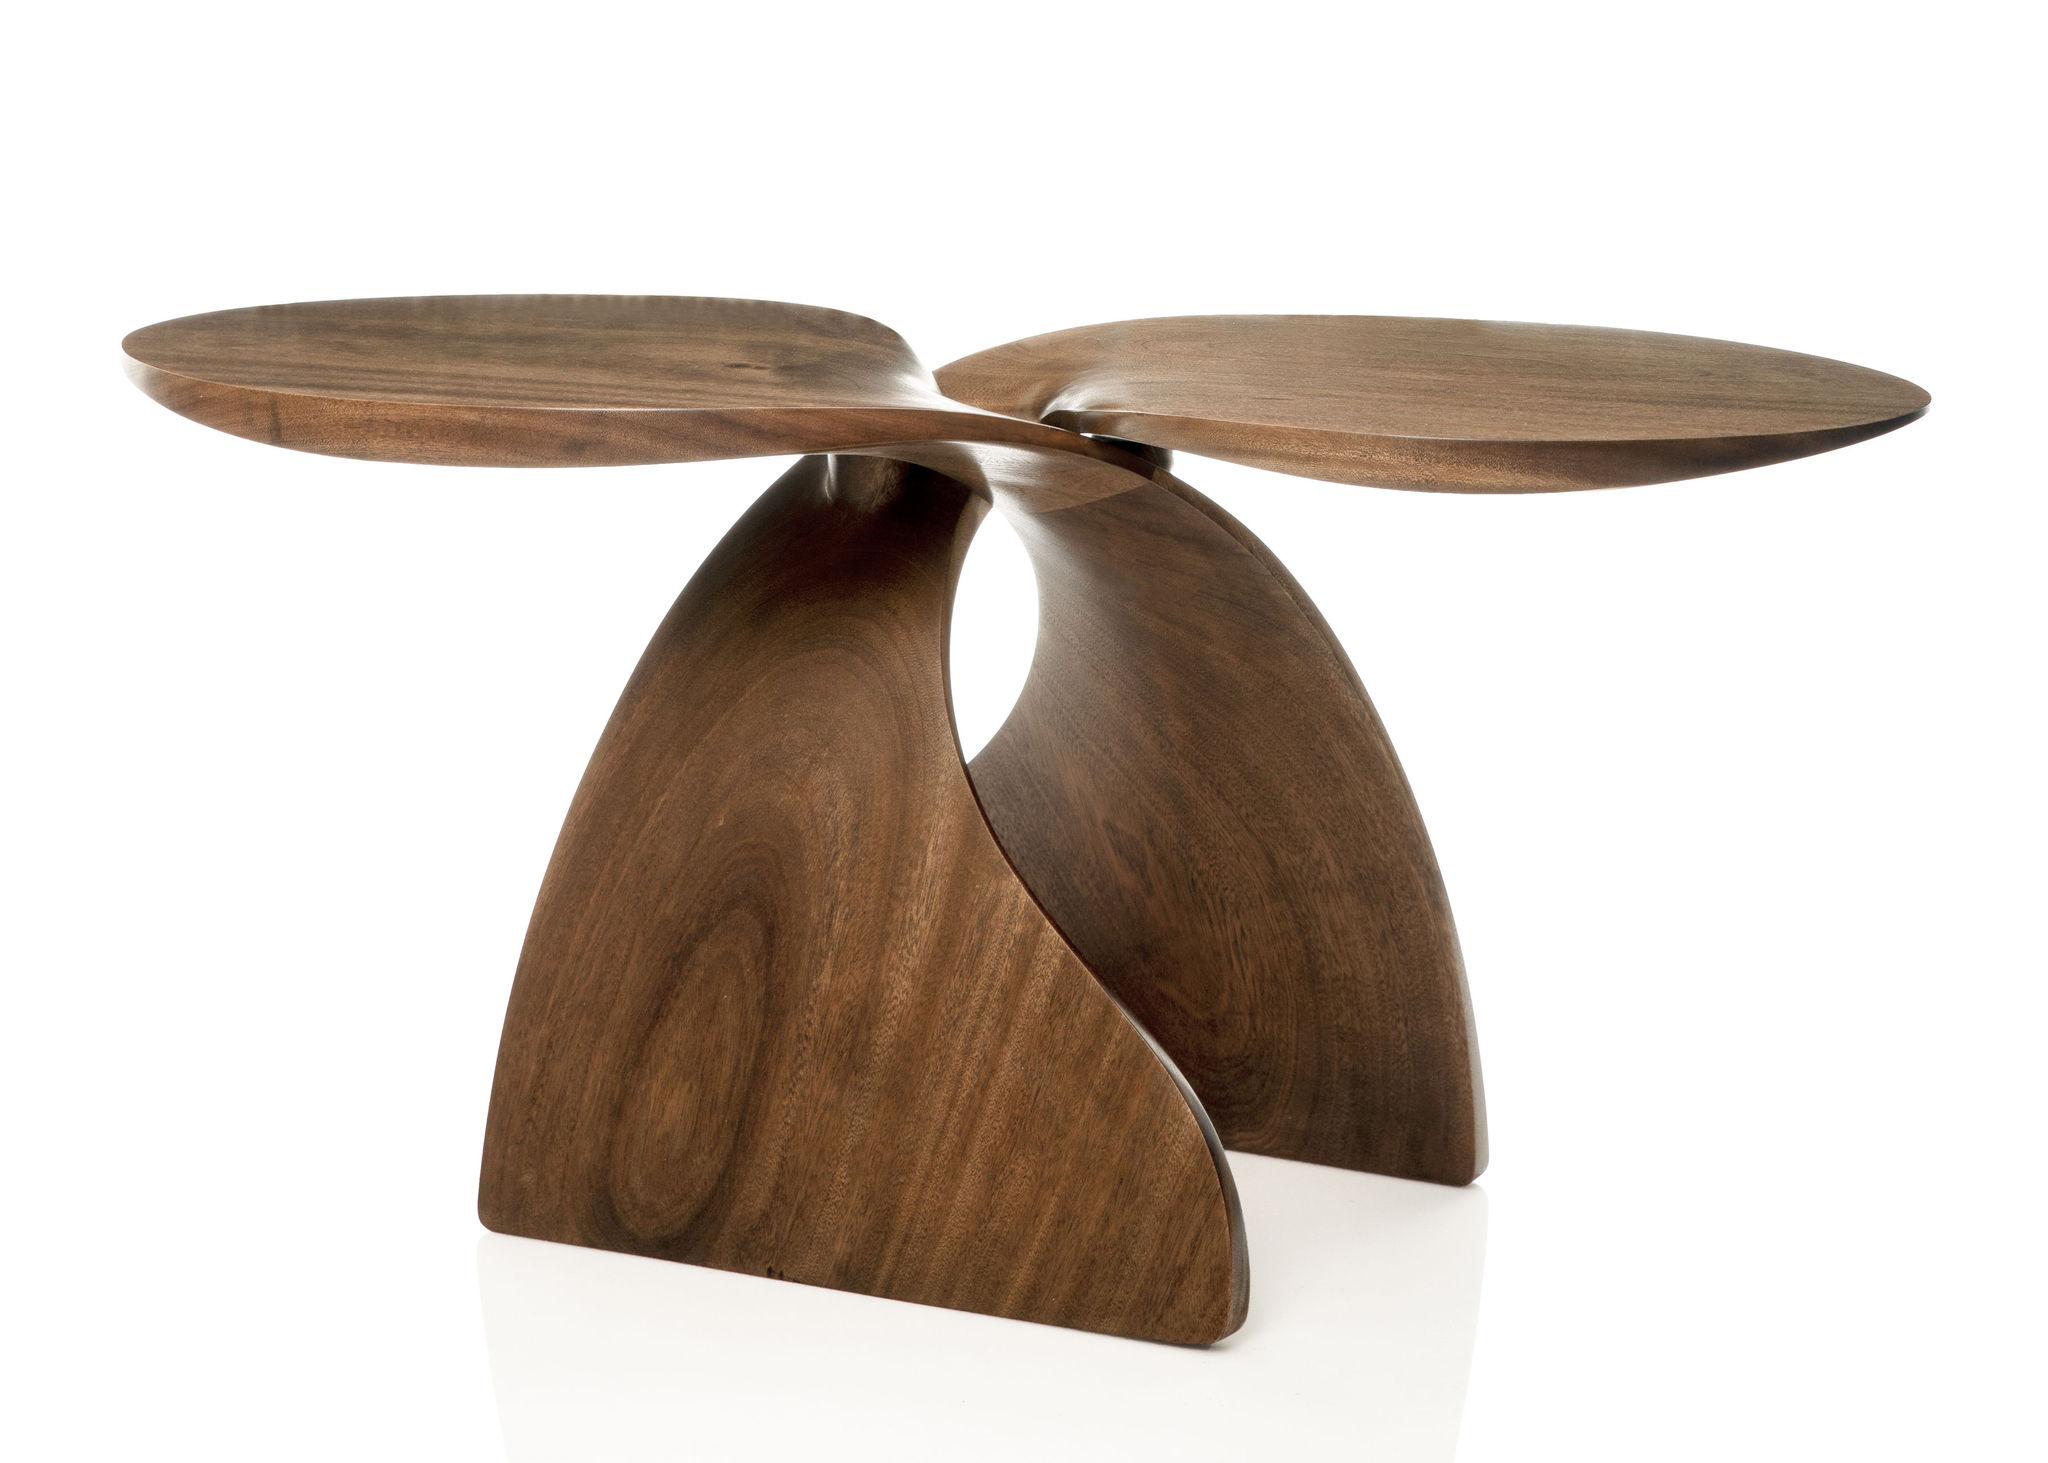 Dieser zeitgenössische Tisch verbindet die klar organische Form der handgeschnitzten, geschwungenen Basiselemente mit der modernen, geometrischen Form der Platten. Es besteht aus zwei identischen Schnitzereien aus Sapelaholz und hat einen